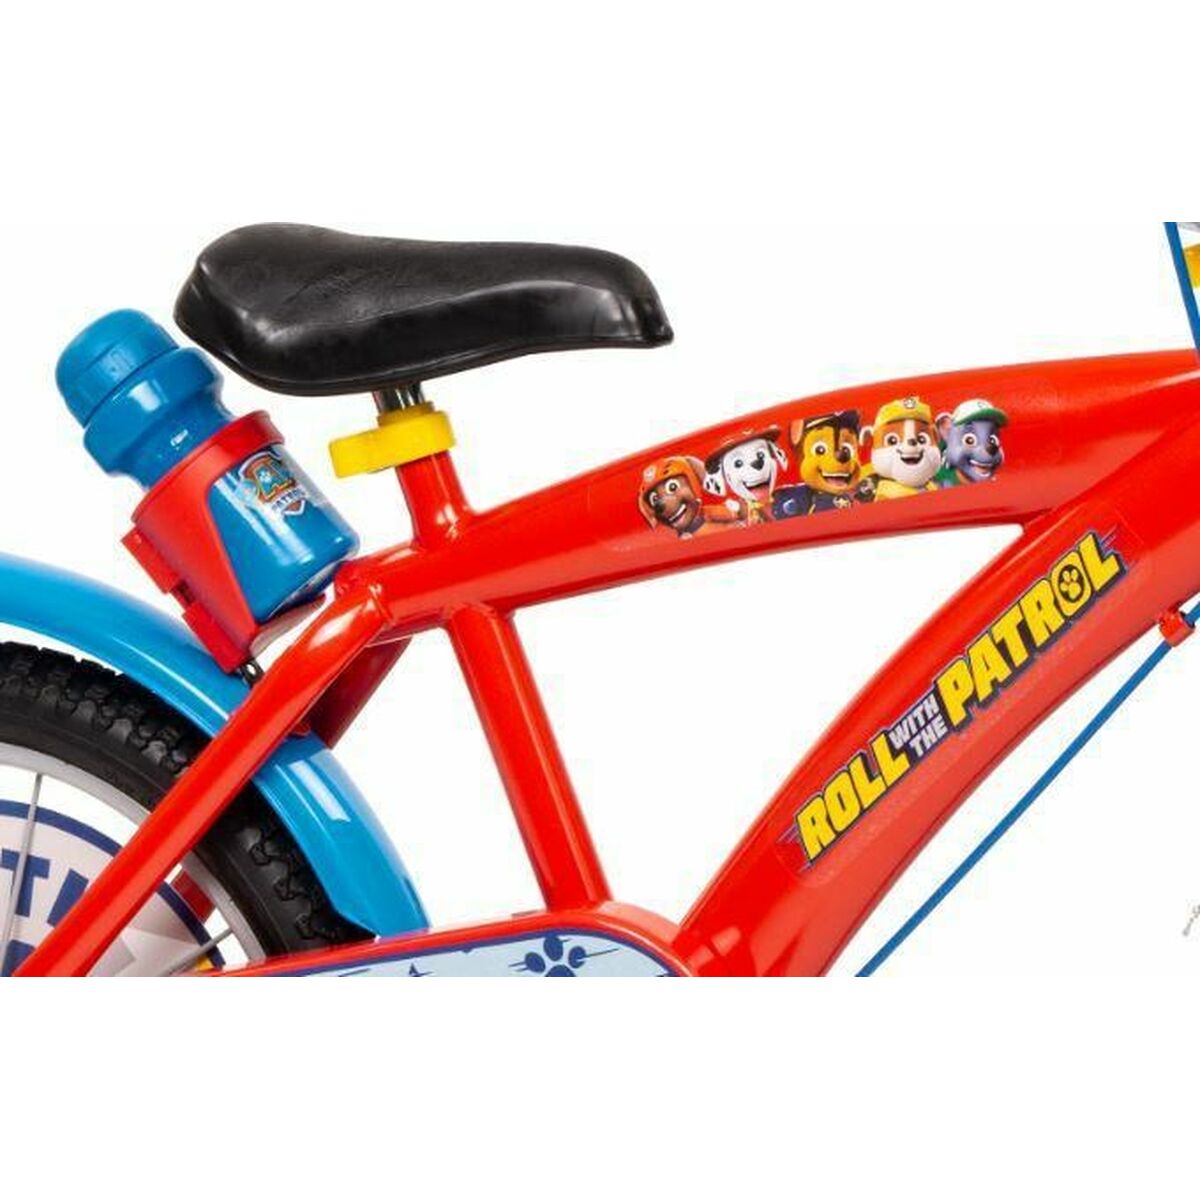 Children's Bike Toimsa TOI1678 Paw Patrol 16" Red Multicolour